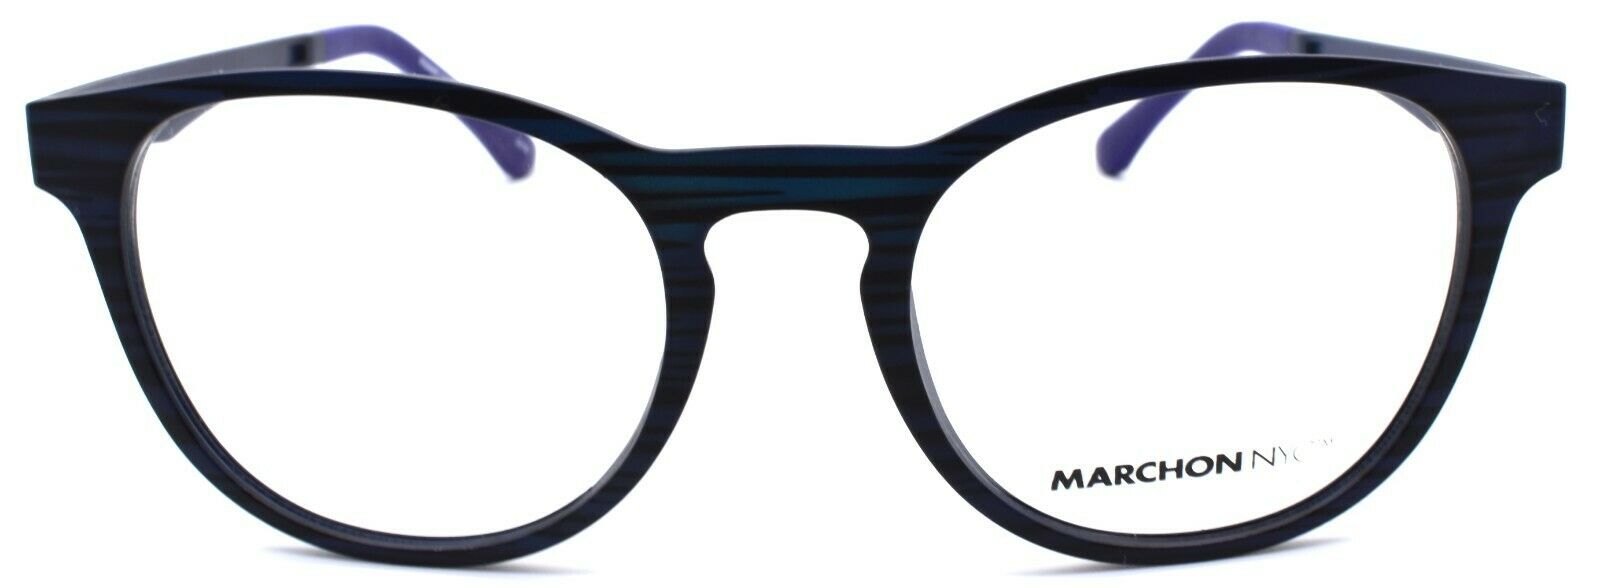 4-Marchon M-1502 412 Eyeglasses Frames 50-19-140 Matte Navy + 2 Magnetic Clip Ons-886895484374-IKSpecs